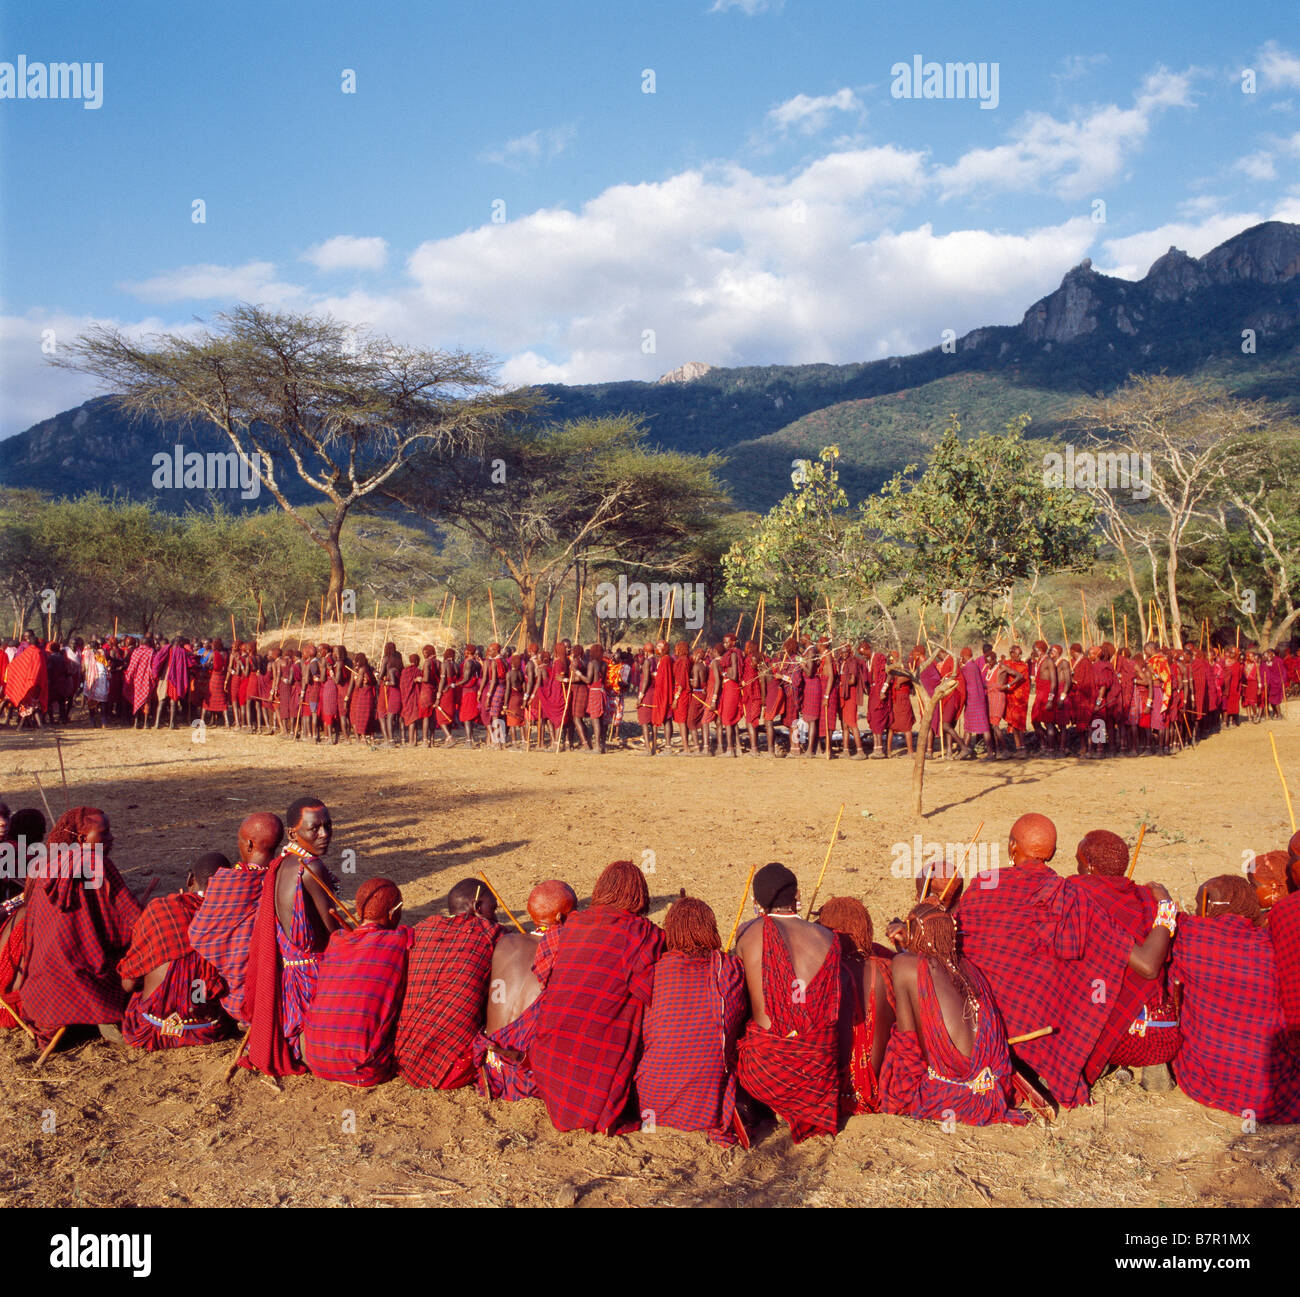 Kenia, Kajiado District, Ol Doinyo Orok. Eine große Ansammlung von Maasai Krieger warten, um im Rahmen einer Eunoto Zeremonie gesegnet werden Stockfoto